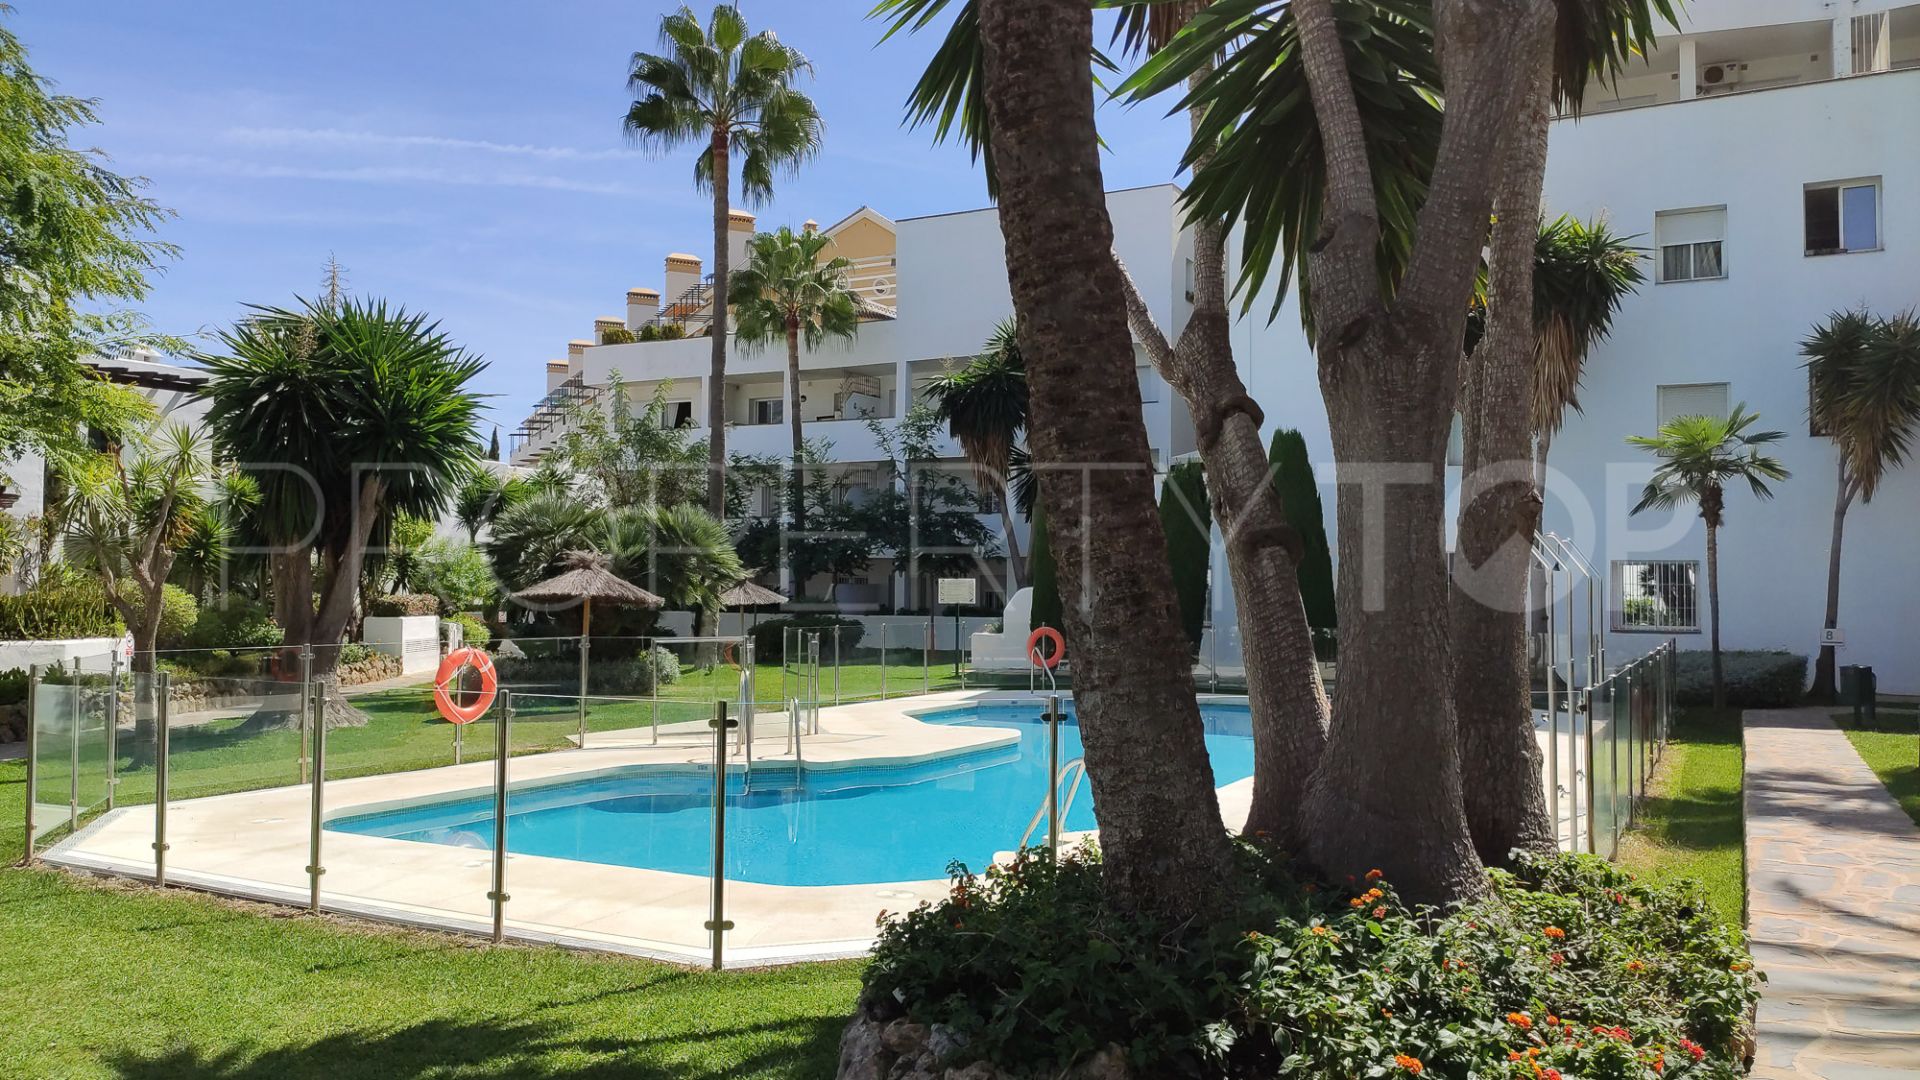 Jardines de Andalucia, apartamento de 3 dormitorios en venta